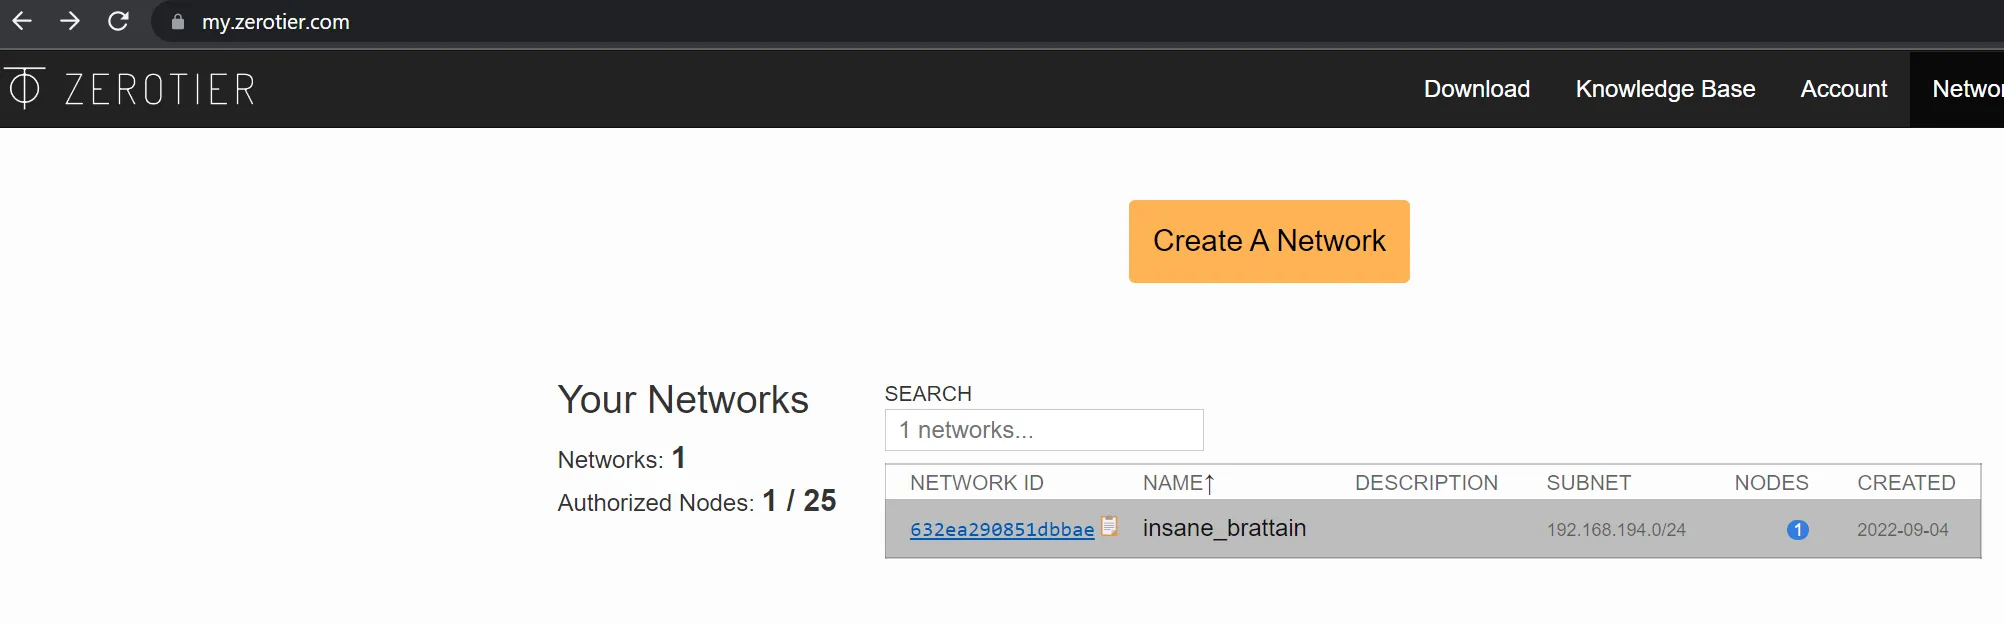 Zerotier Network ID